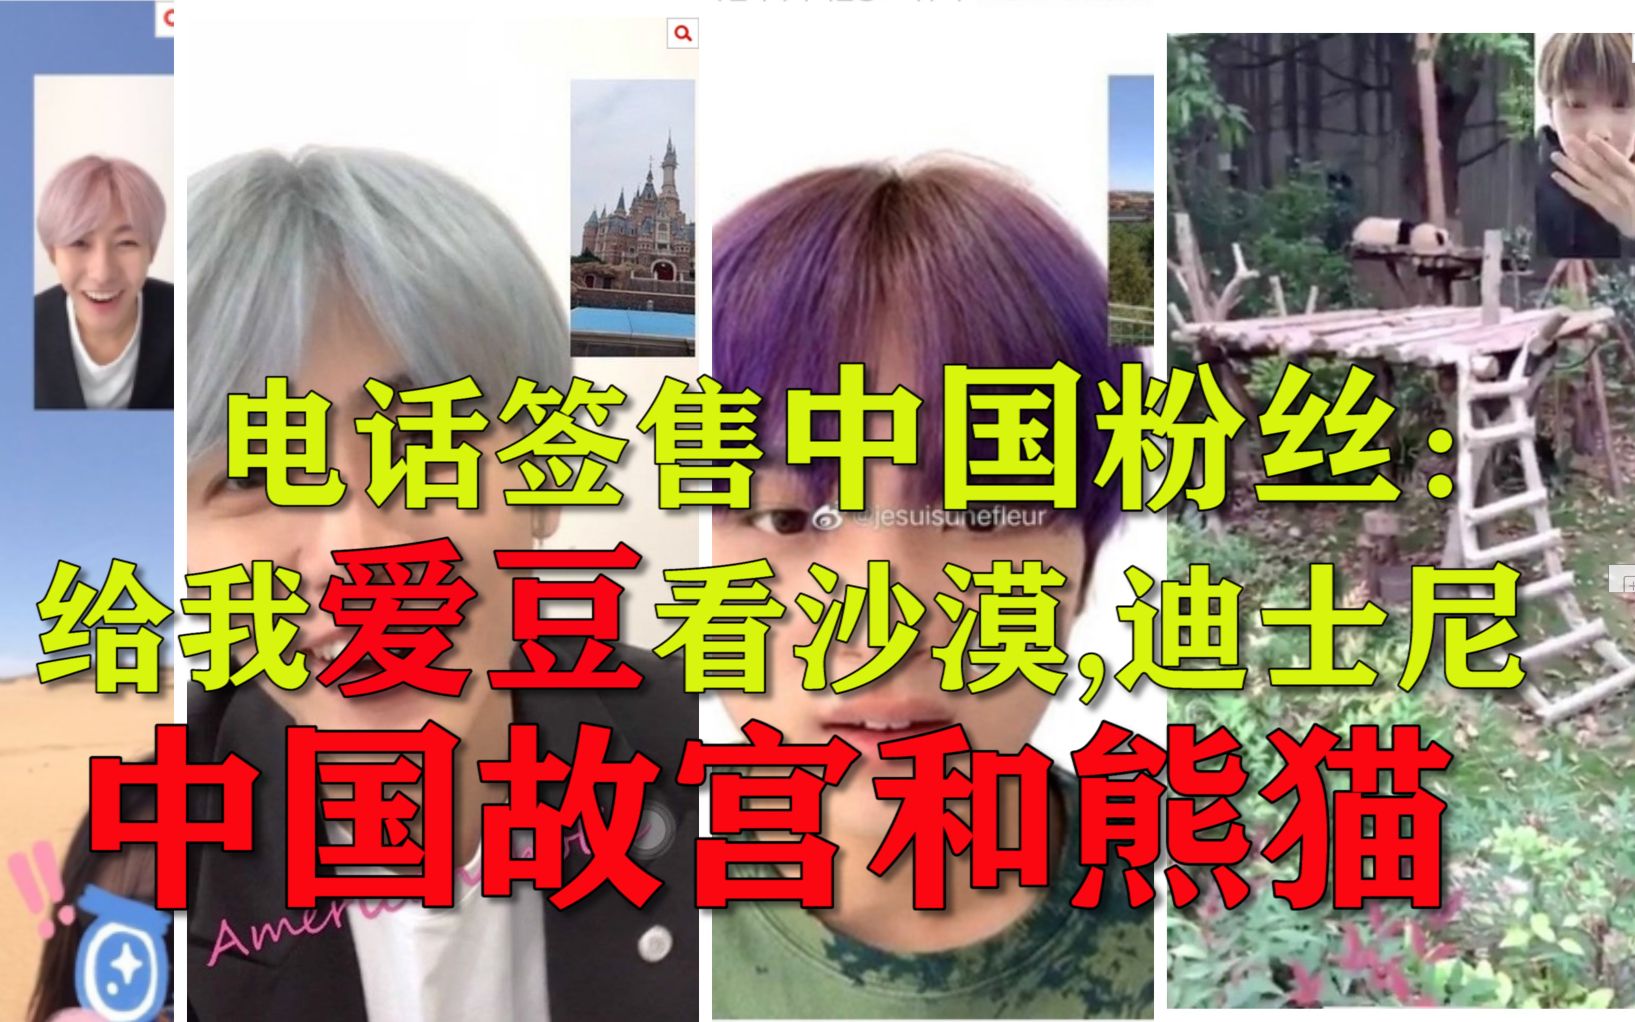 中国粉丝给韩国爱豆看中国故宫和熊猫，韩国网友：电话签售中国粉丝给偶像制造惊喜太给力了！